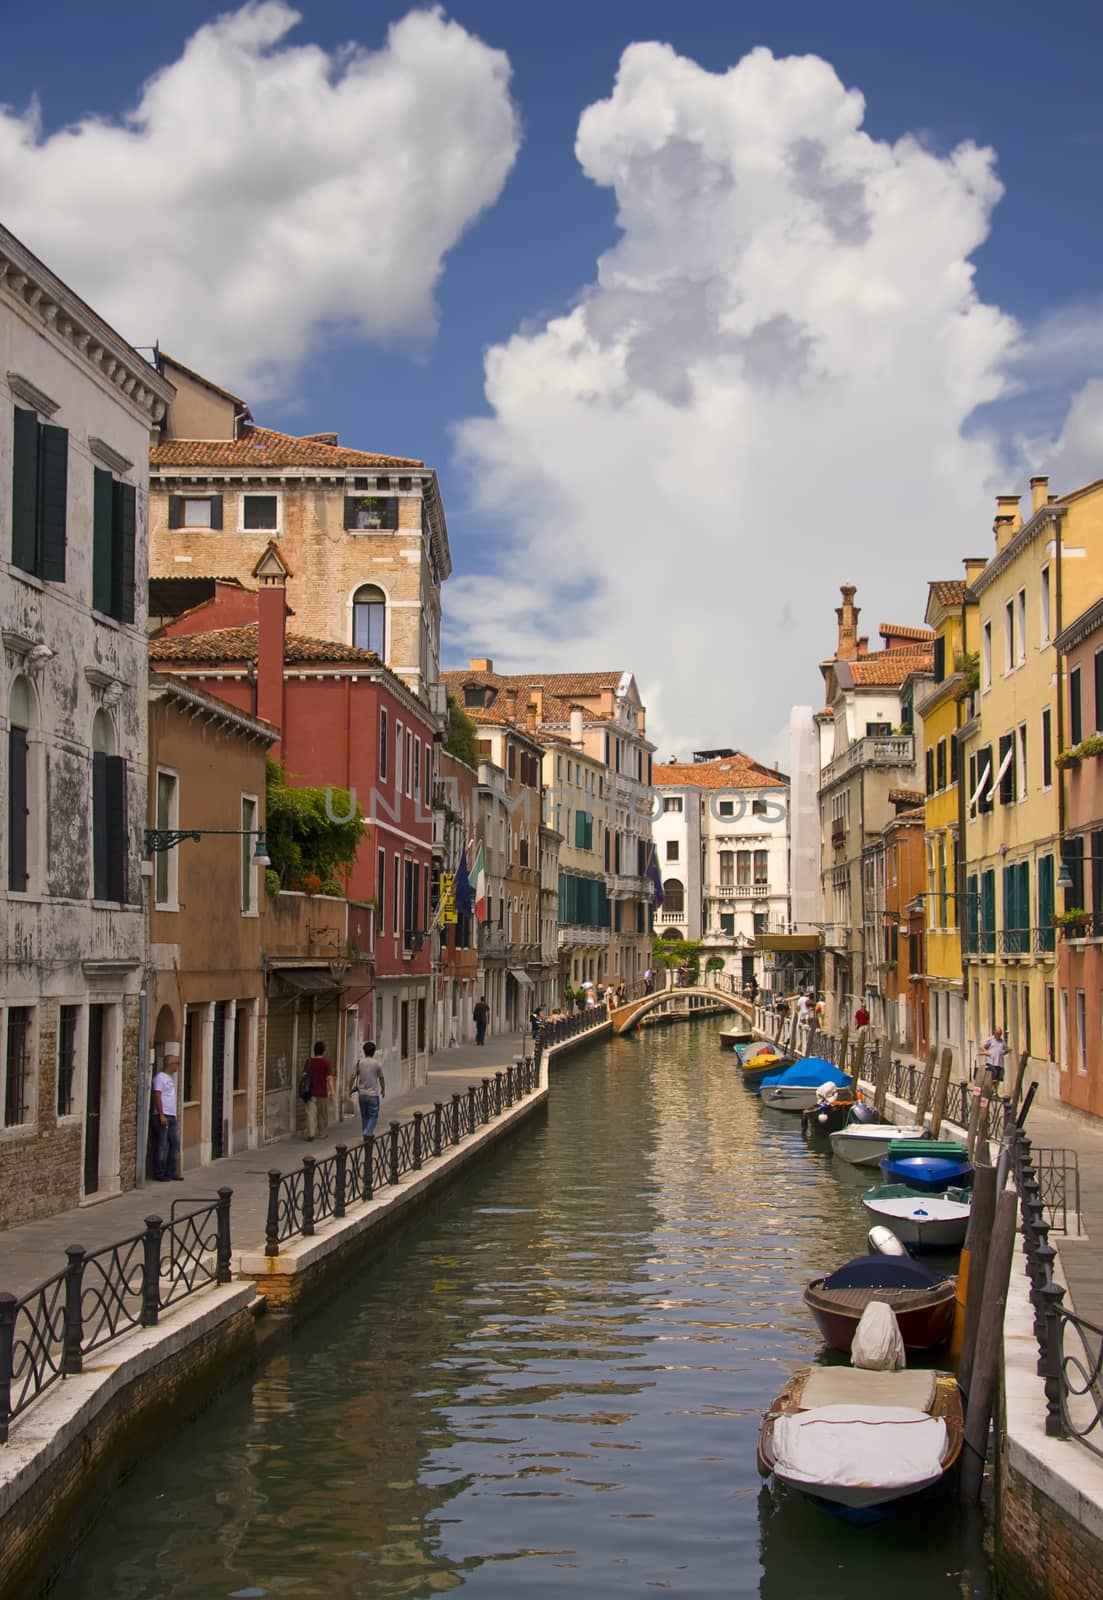 Idyllic canal view in Venice by fotoecho